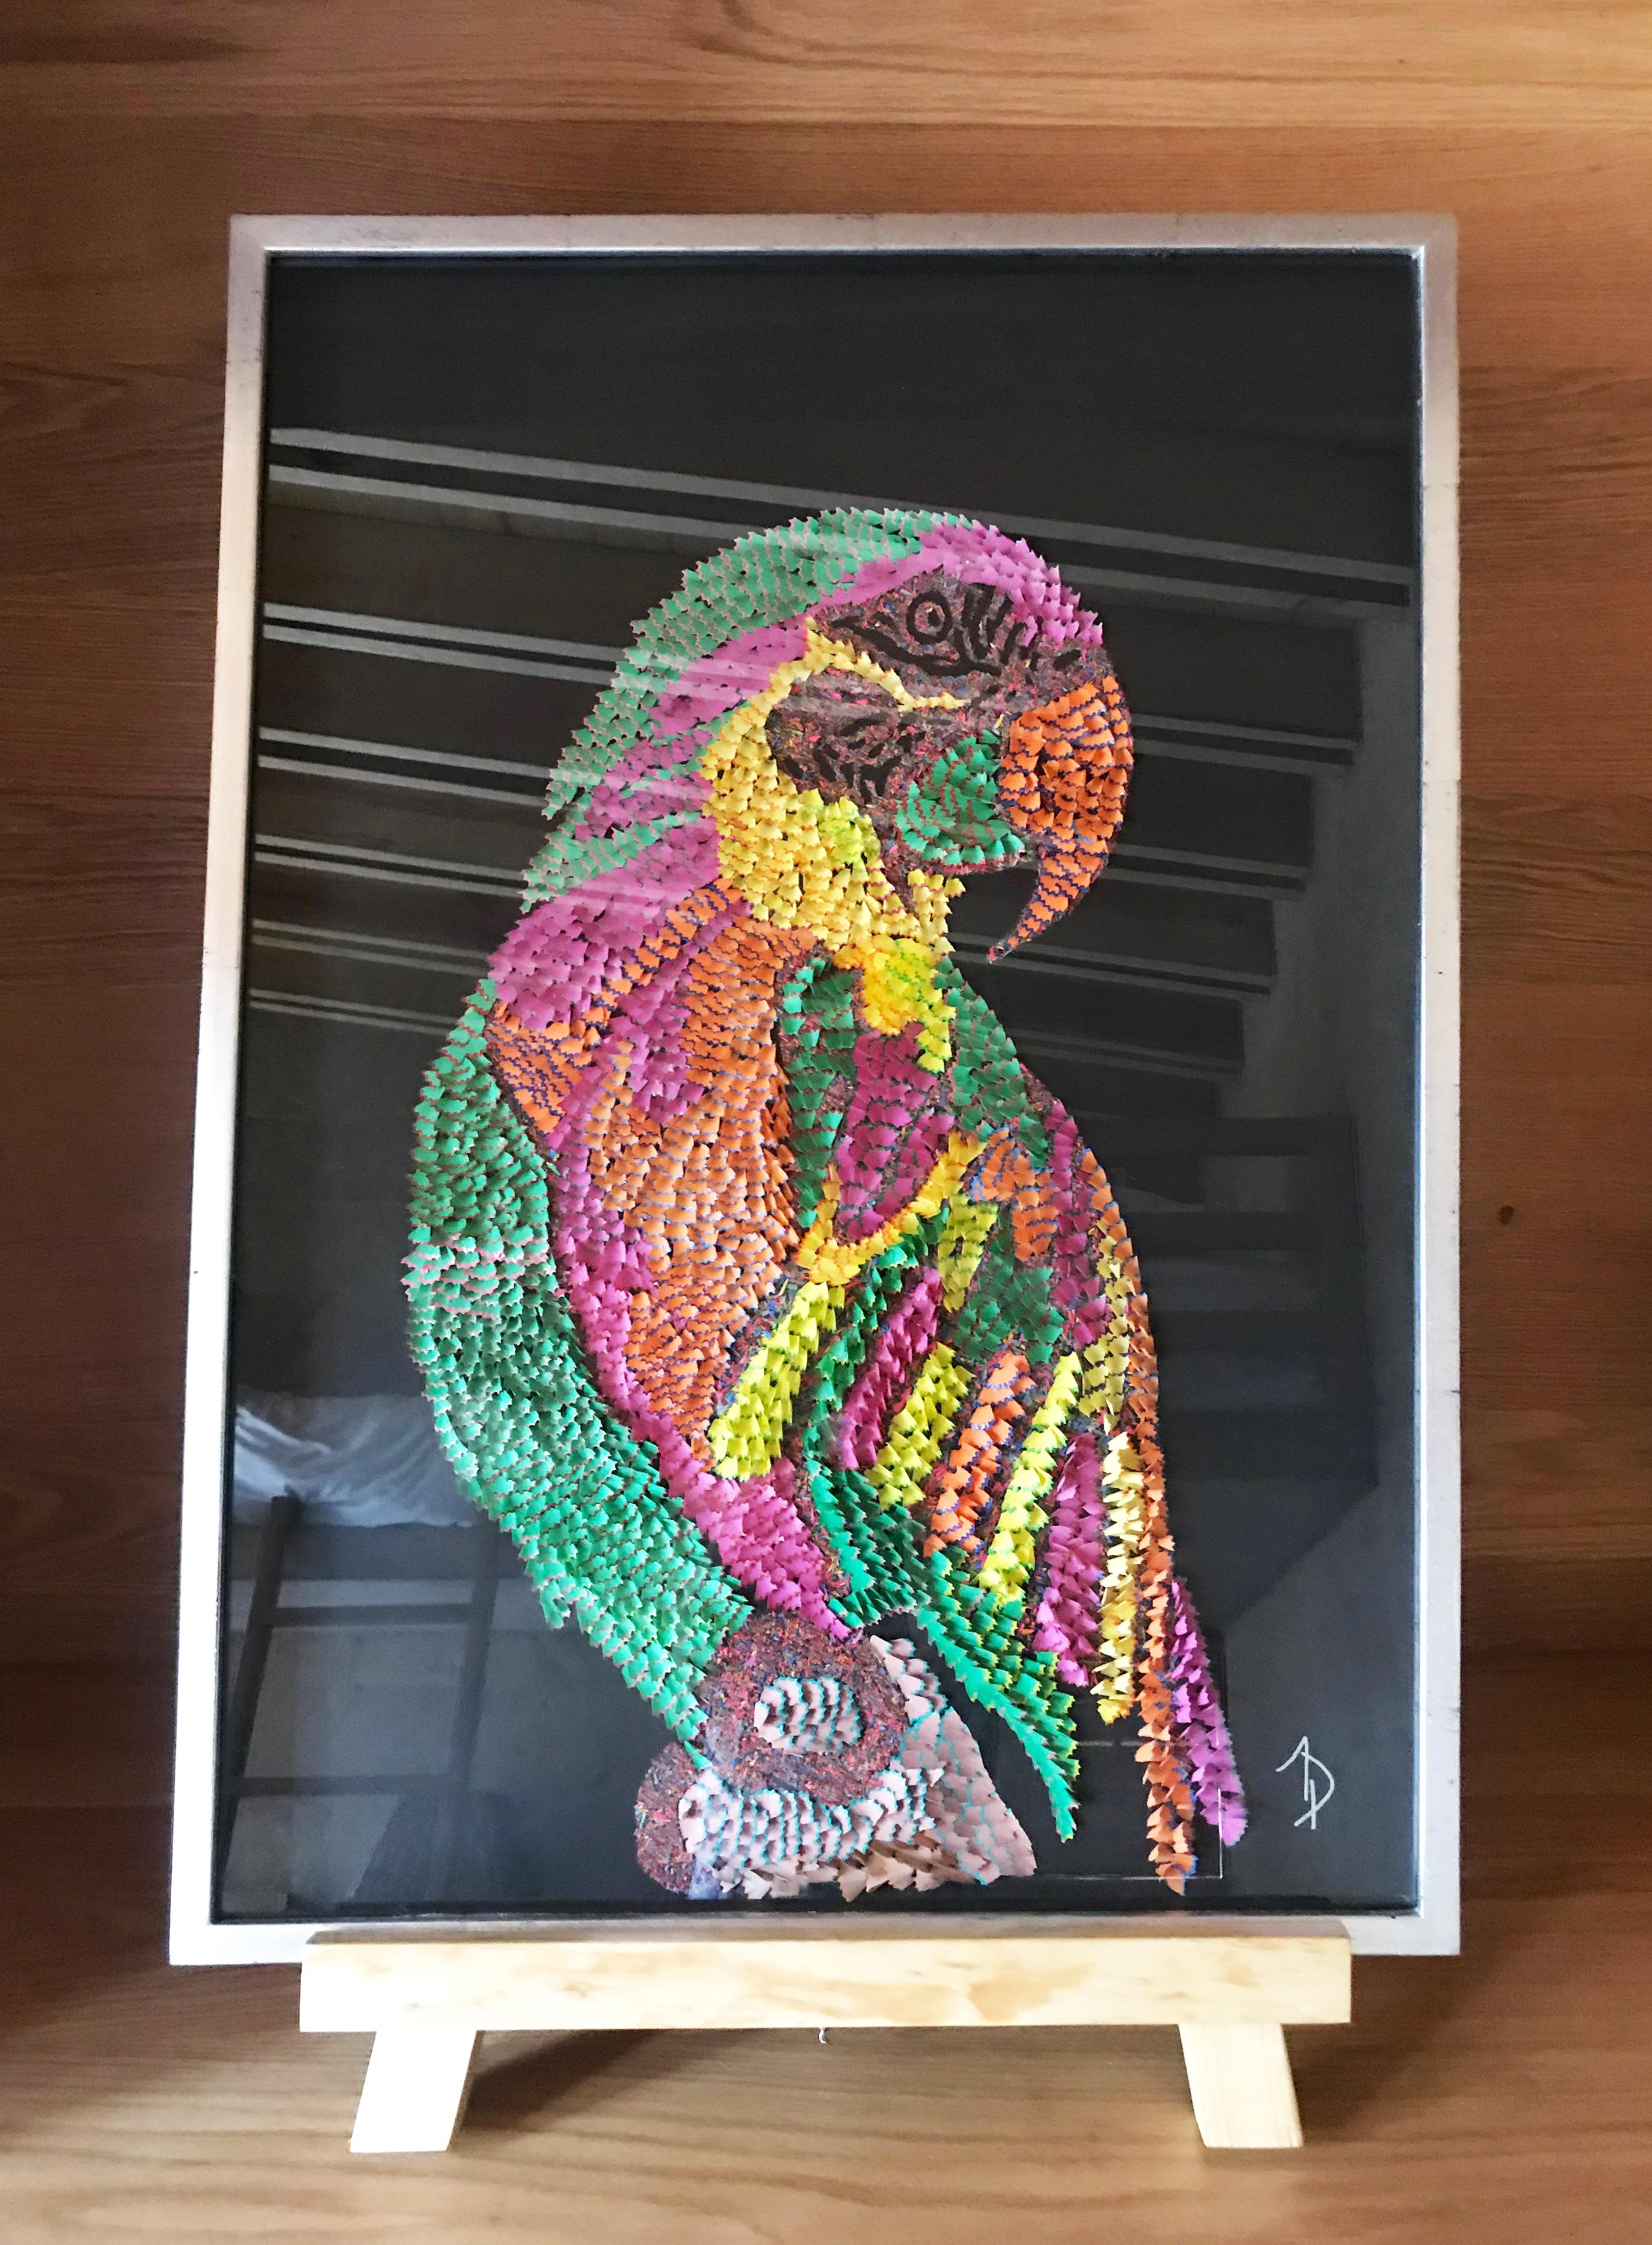 Colorful Wild Bird With Black Background - Art by Arozarena De La Fuente